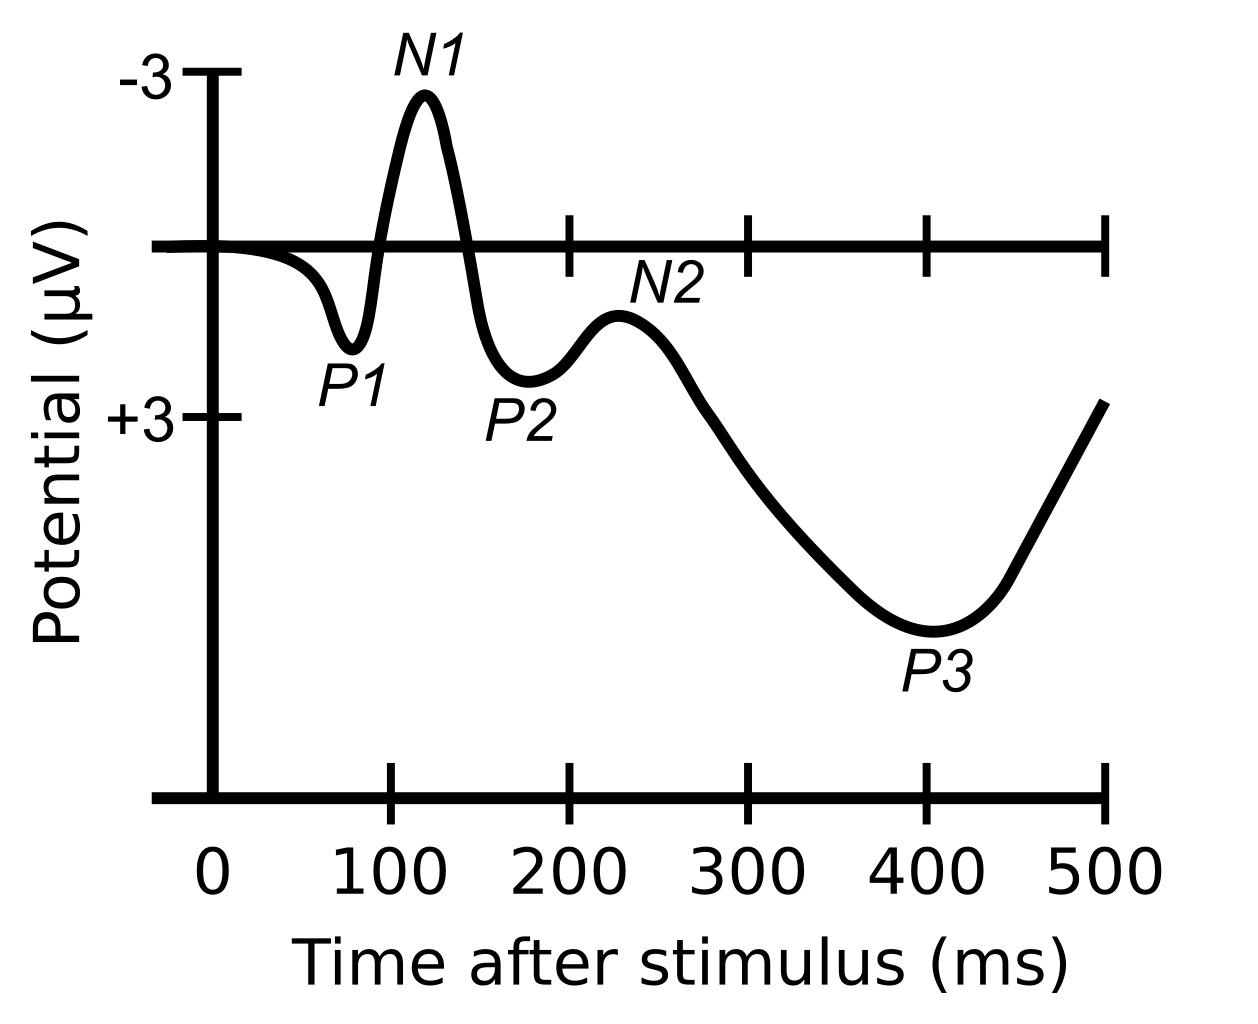 File:Peter Millar Logo.svg - Wikipedia